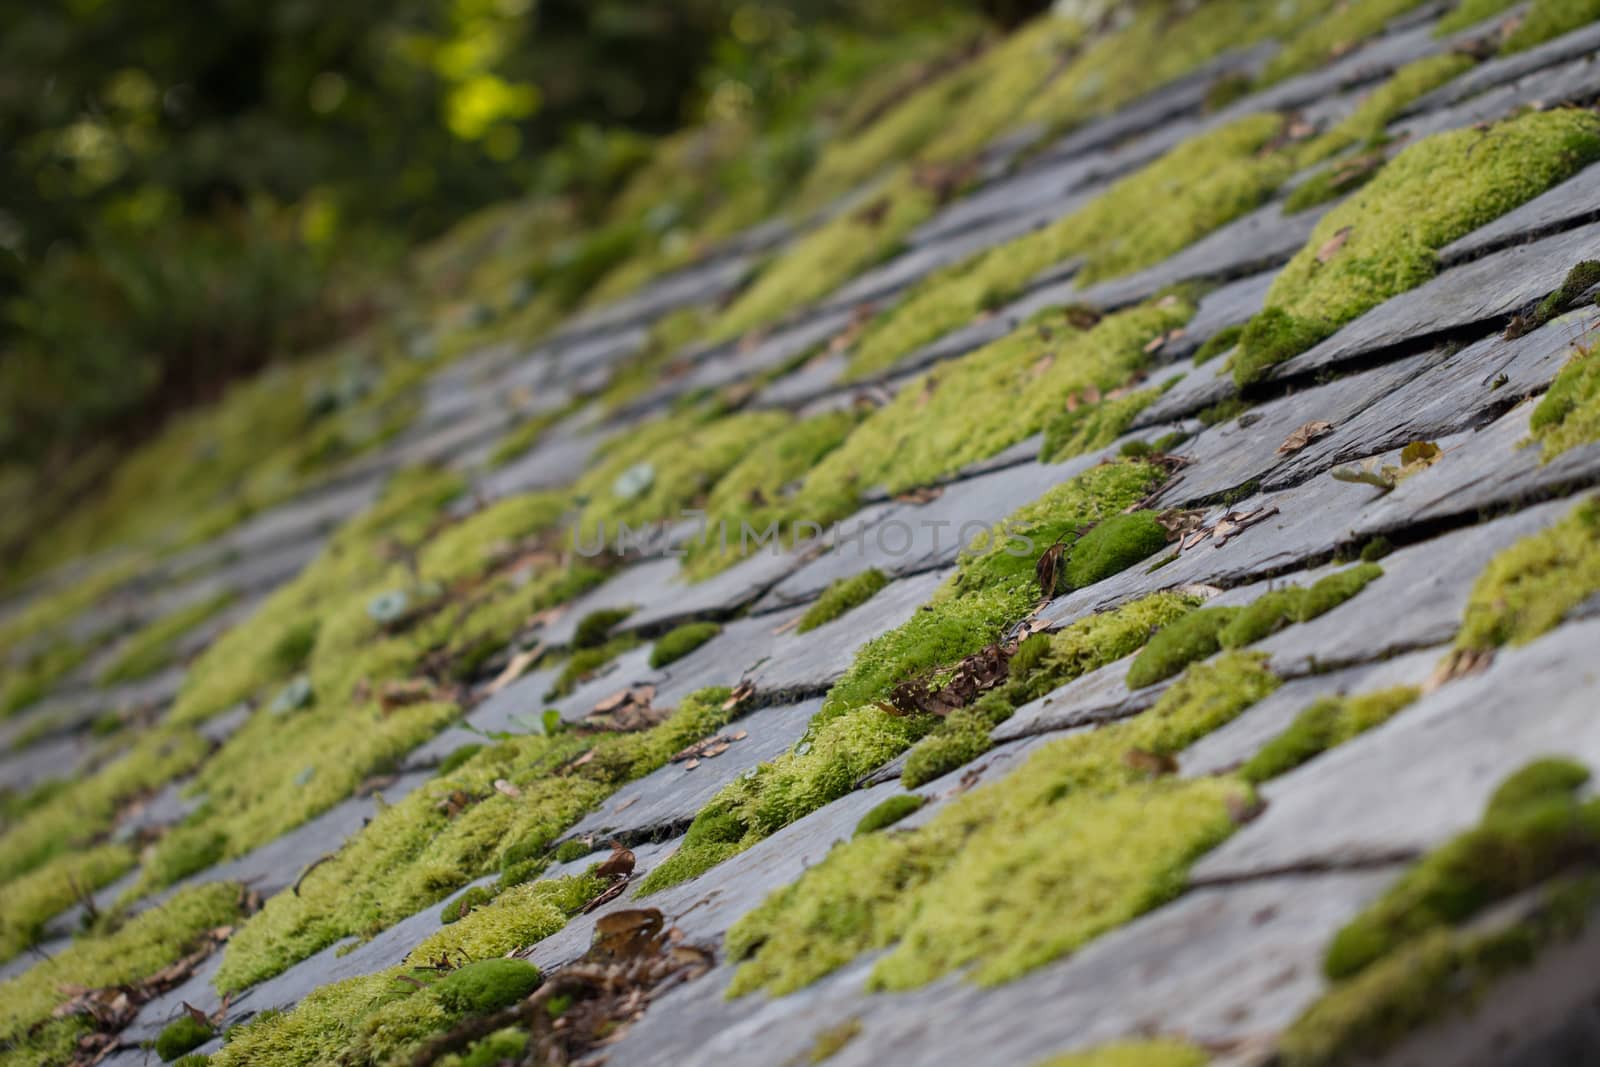 Green moss on slate roof tiles